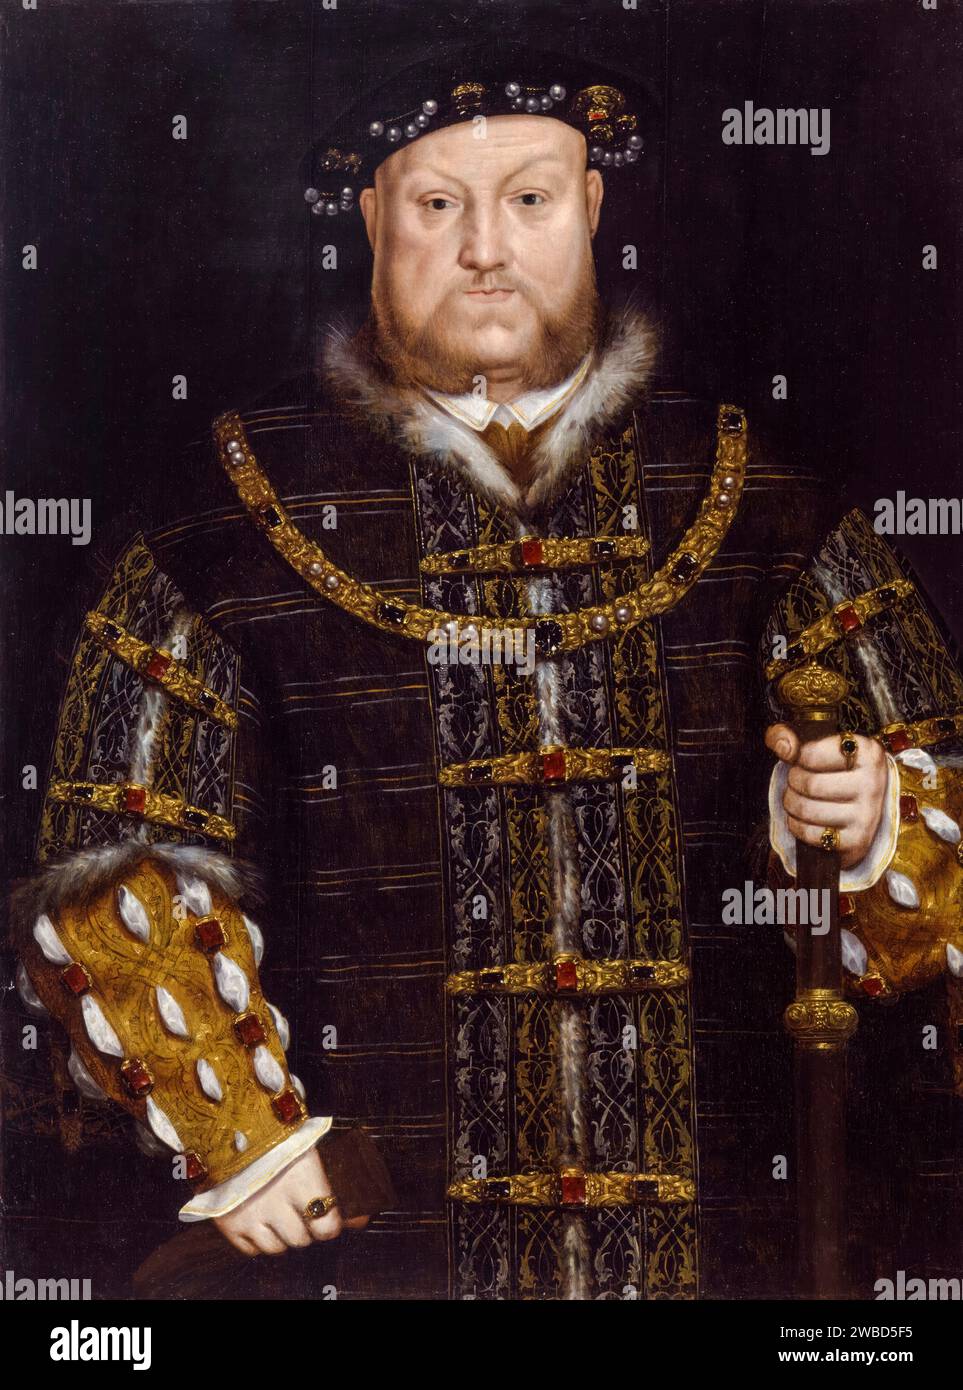 Henry VIII Portrait du roi Henri VIII d'Angleterre (1491-1547), peinture à l'huile sur panneau d'après Hans Holbein le Jeune, 1600-1625 Banque D'Images